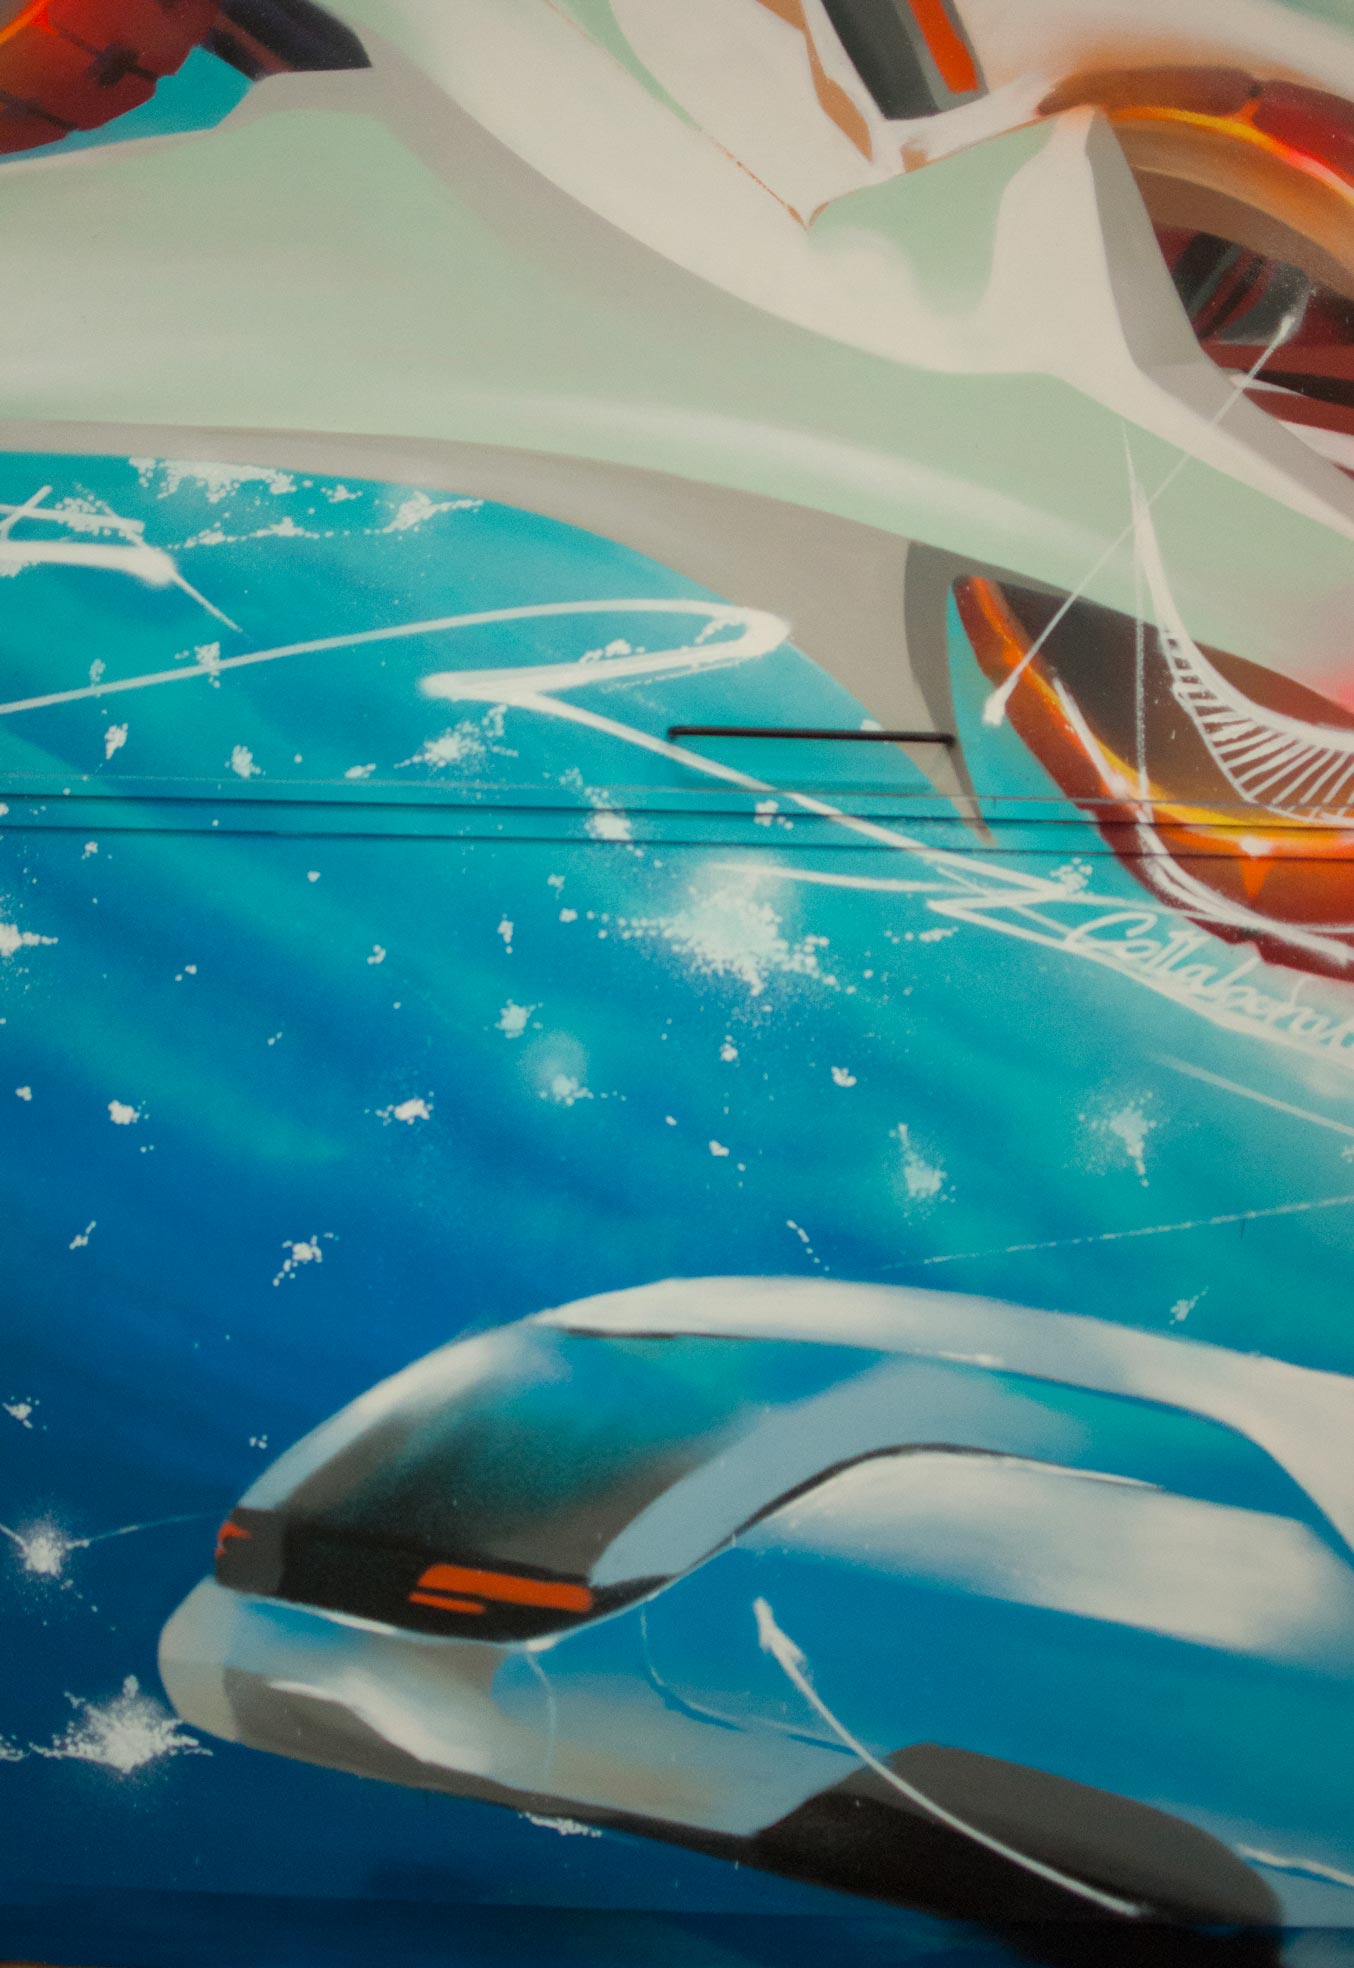 décor design aeroport de paris decoration fresque espace detente peinture graff realisme main robot futur avion transport